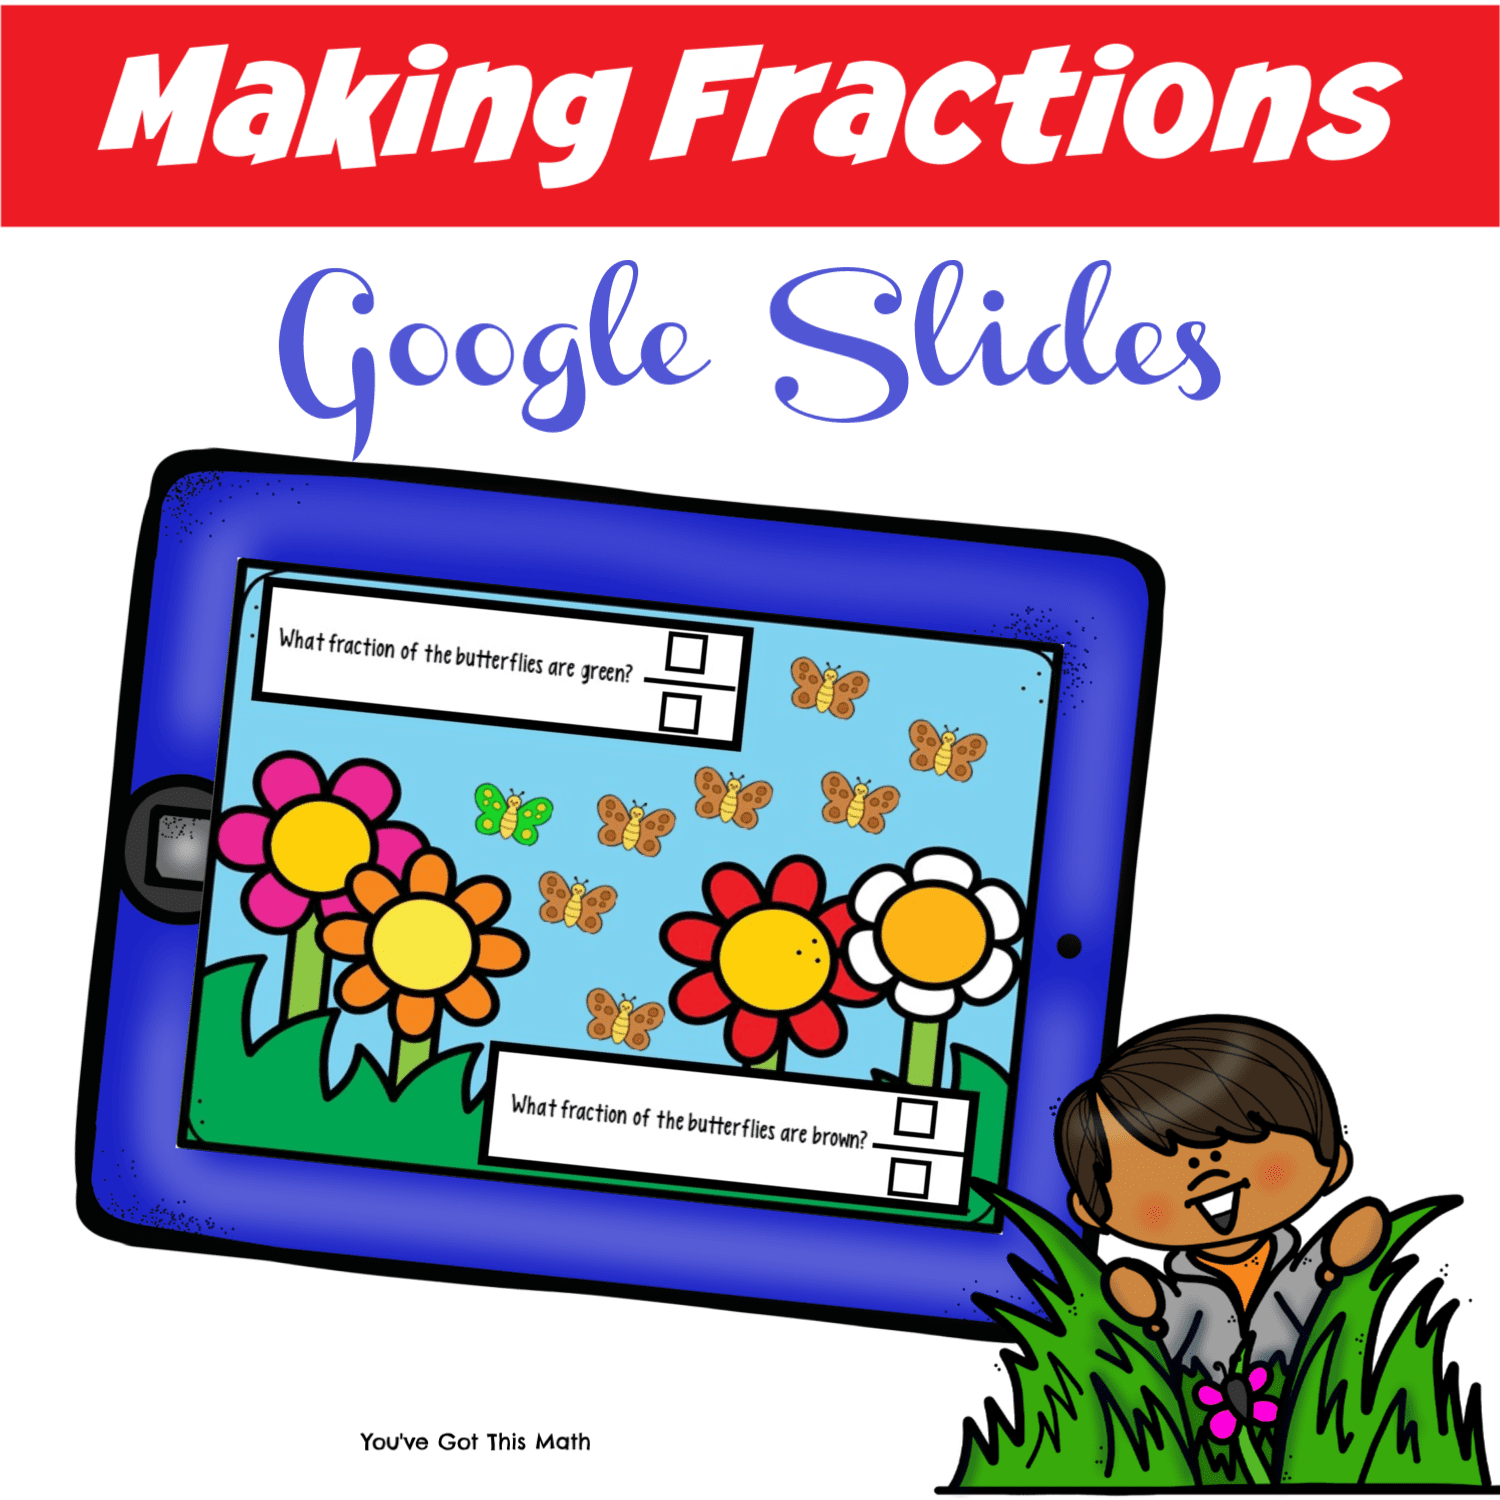 Making fractions google slides